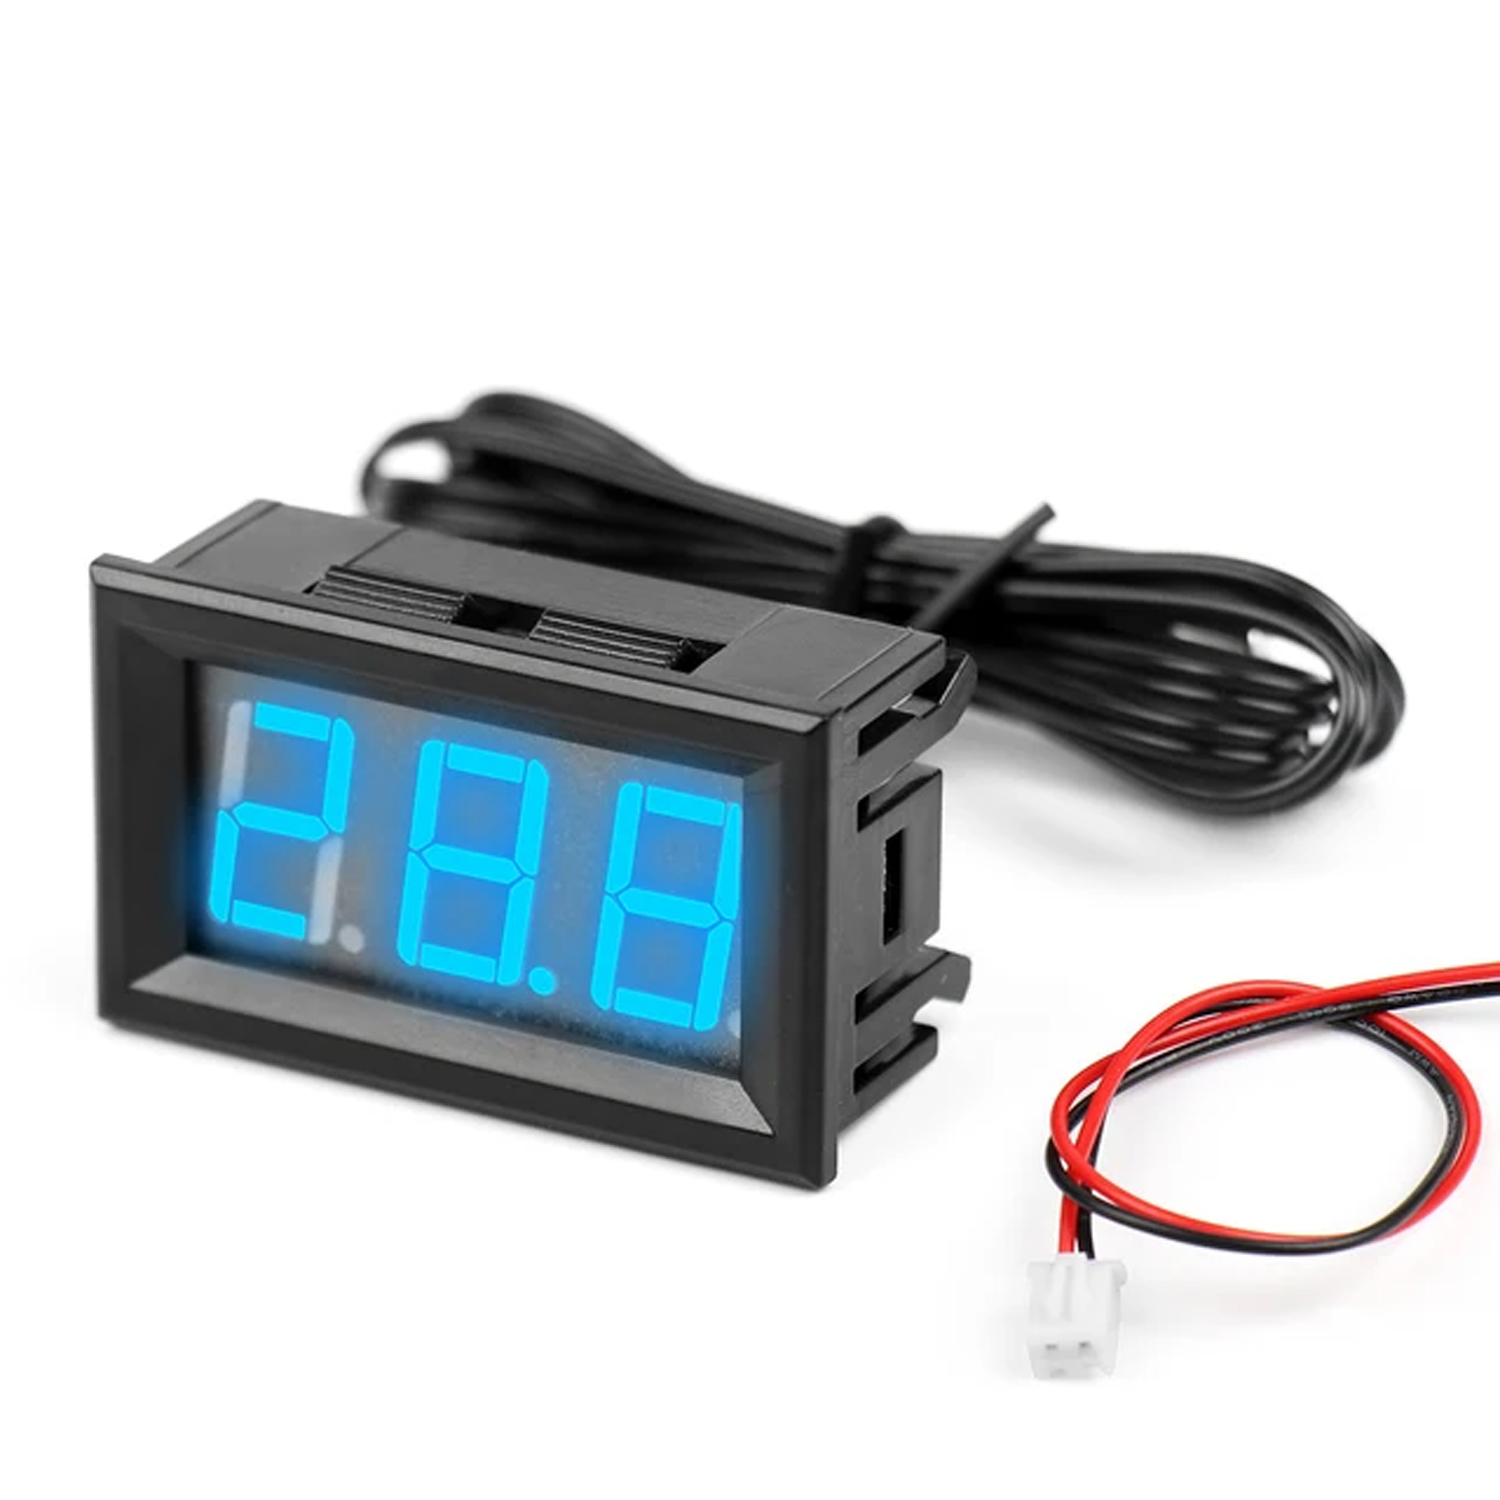 Цифровой термометр с выносным датчиком температуры -50 до +110 °C. DC 4-12В, синий, фото